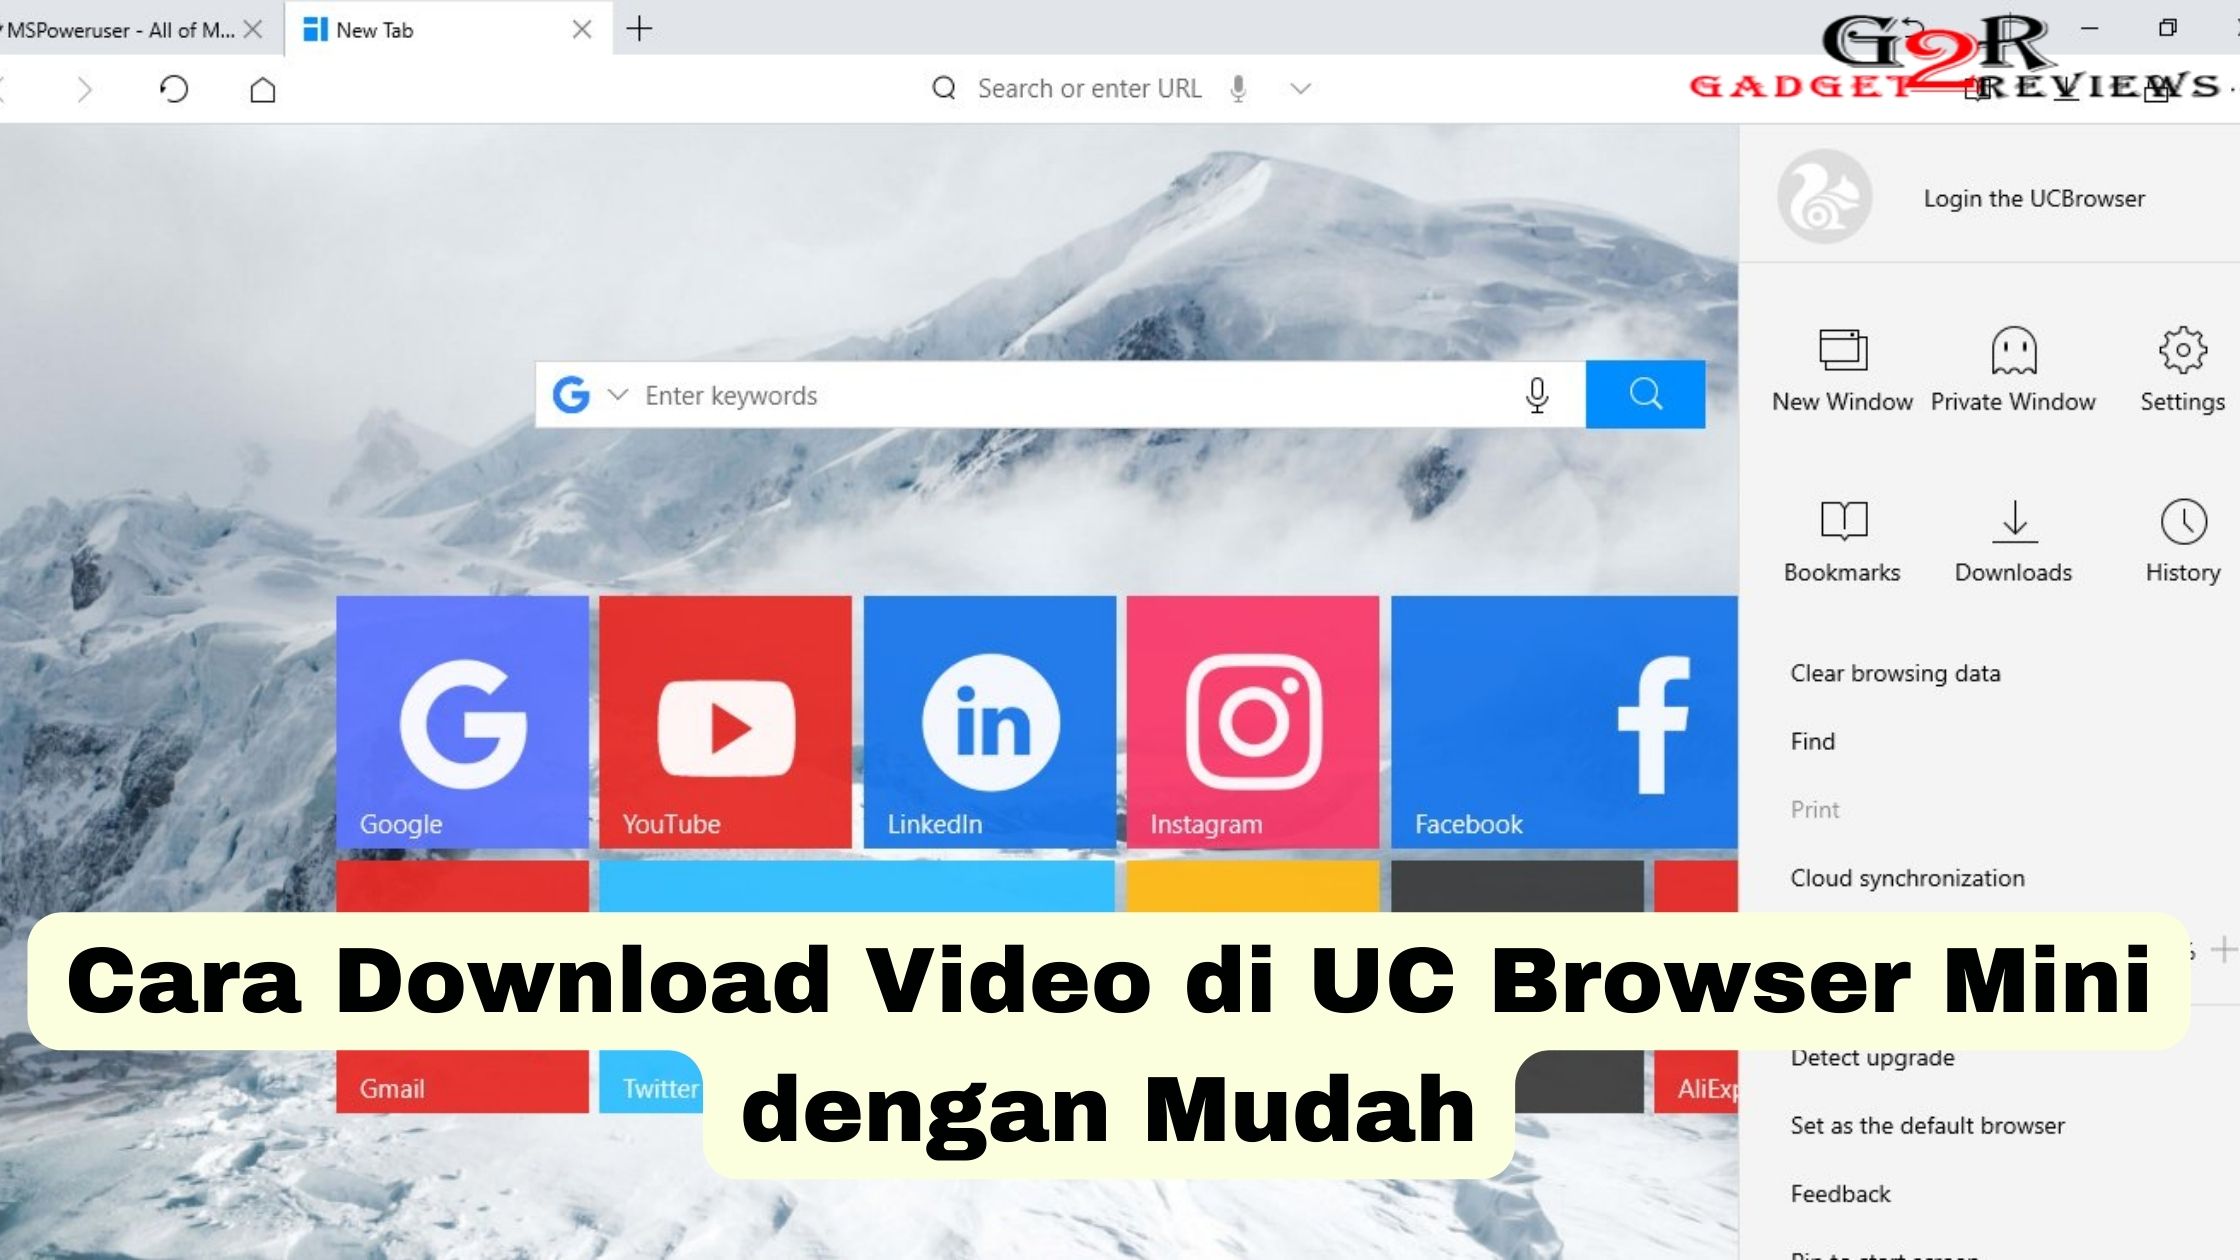 Cara Download Video di UC Browser Mini